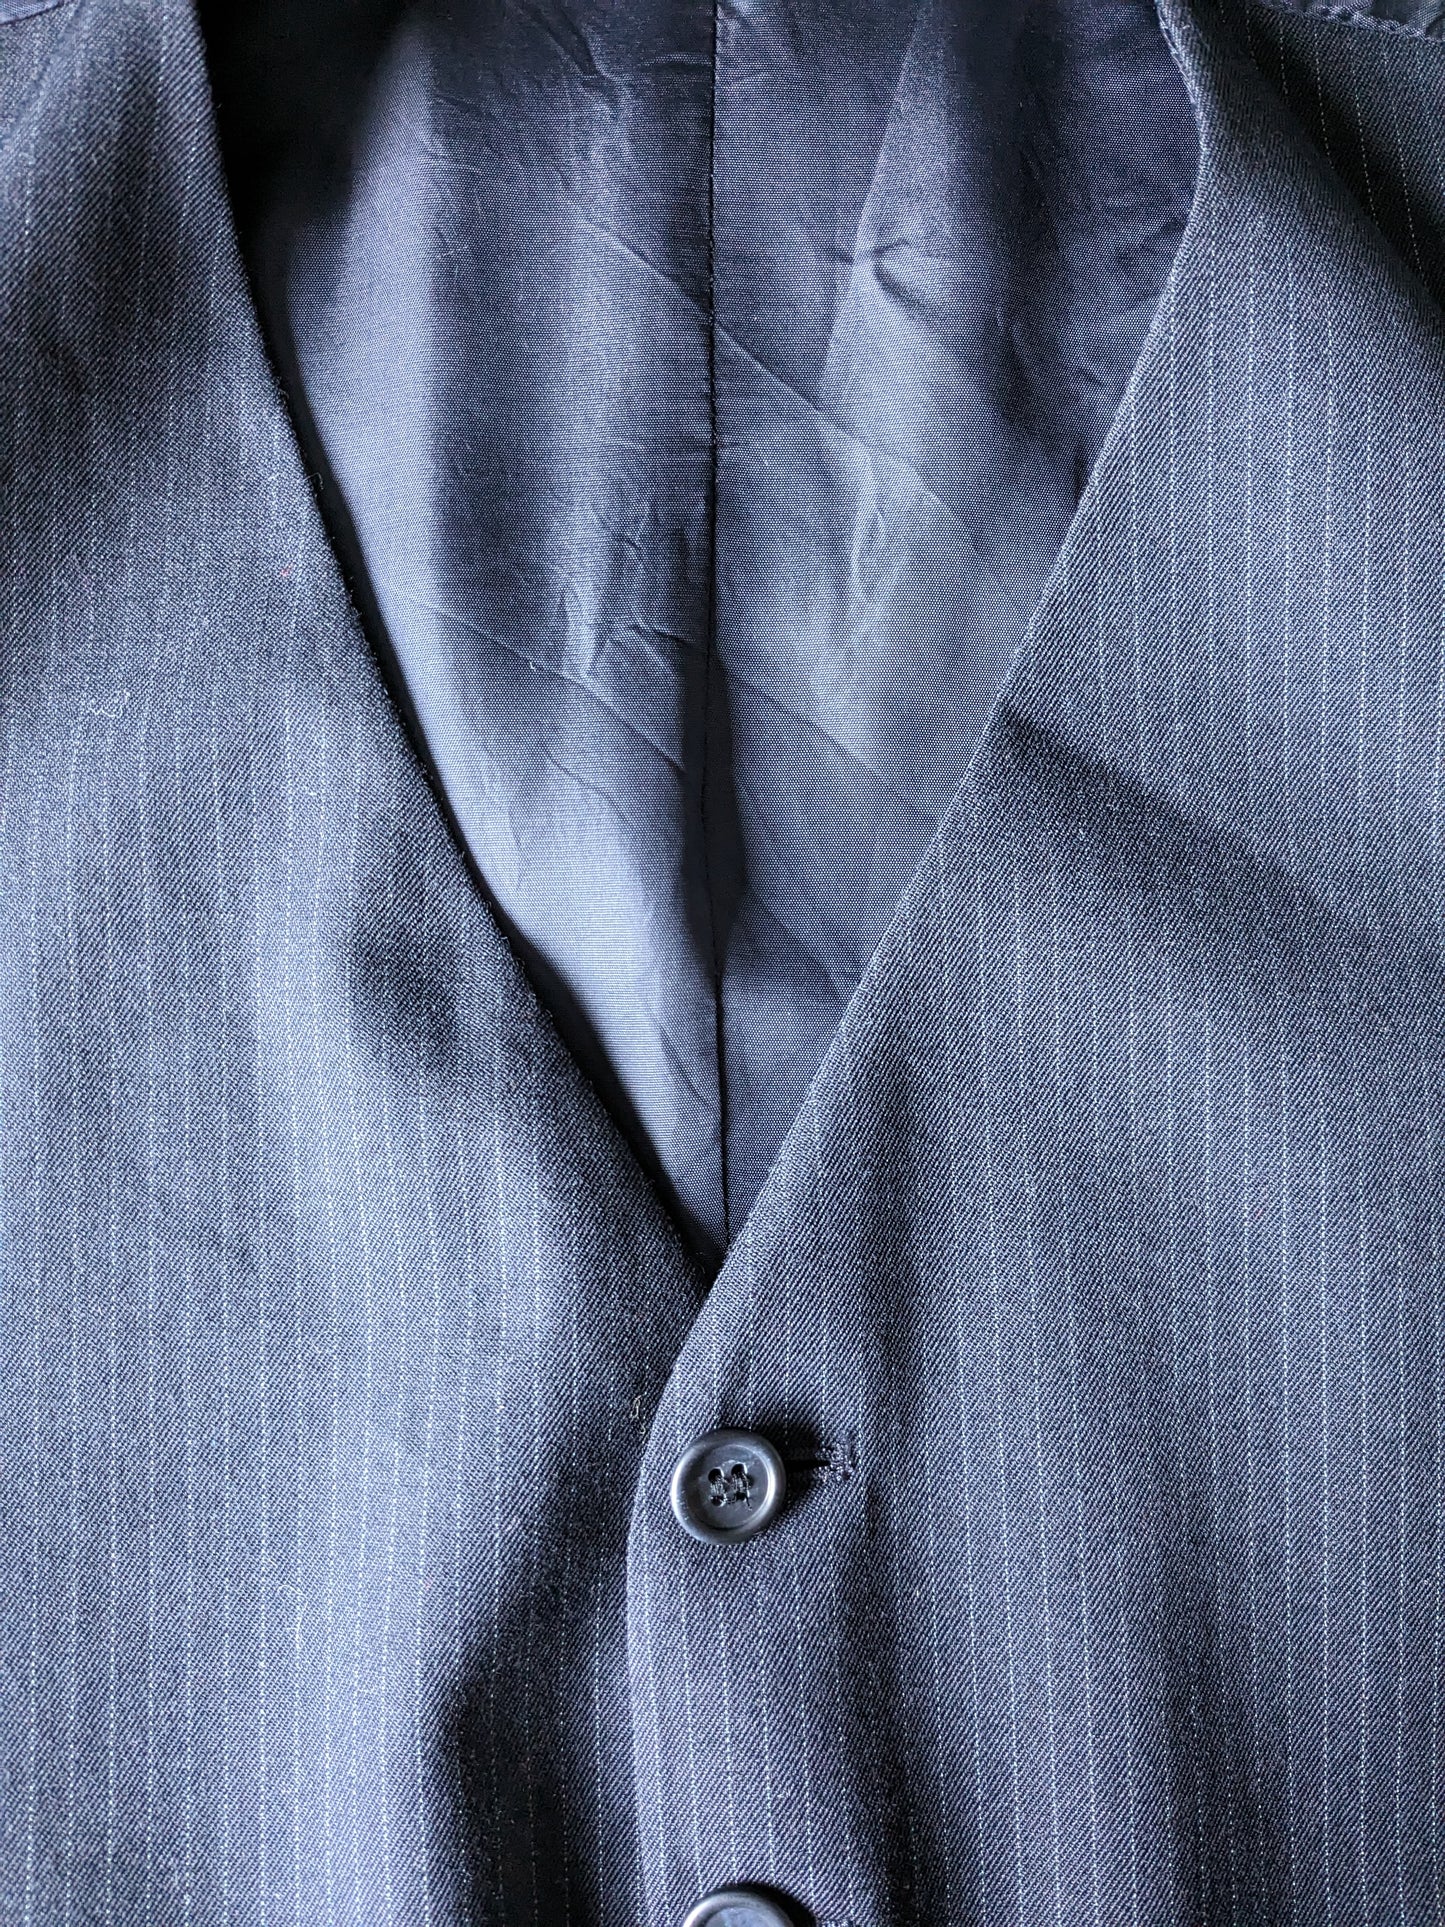 Waistcoat. Dark blue striped. Size 52 / L. #323.